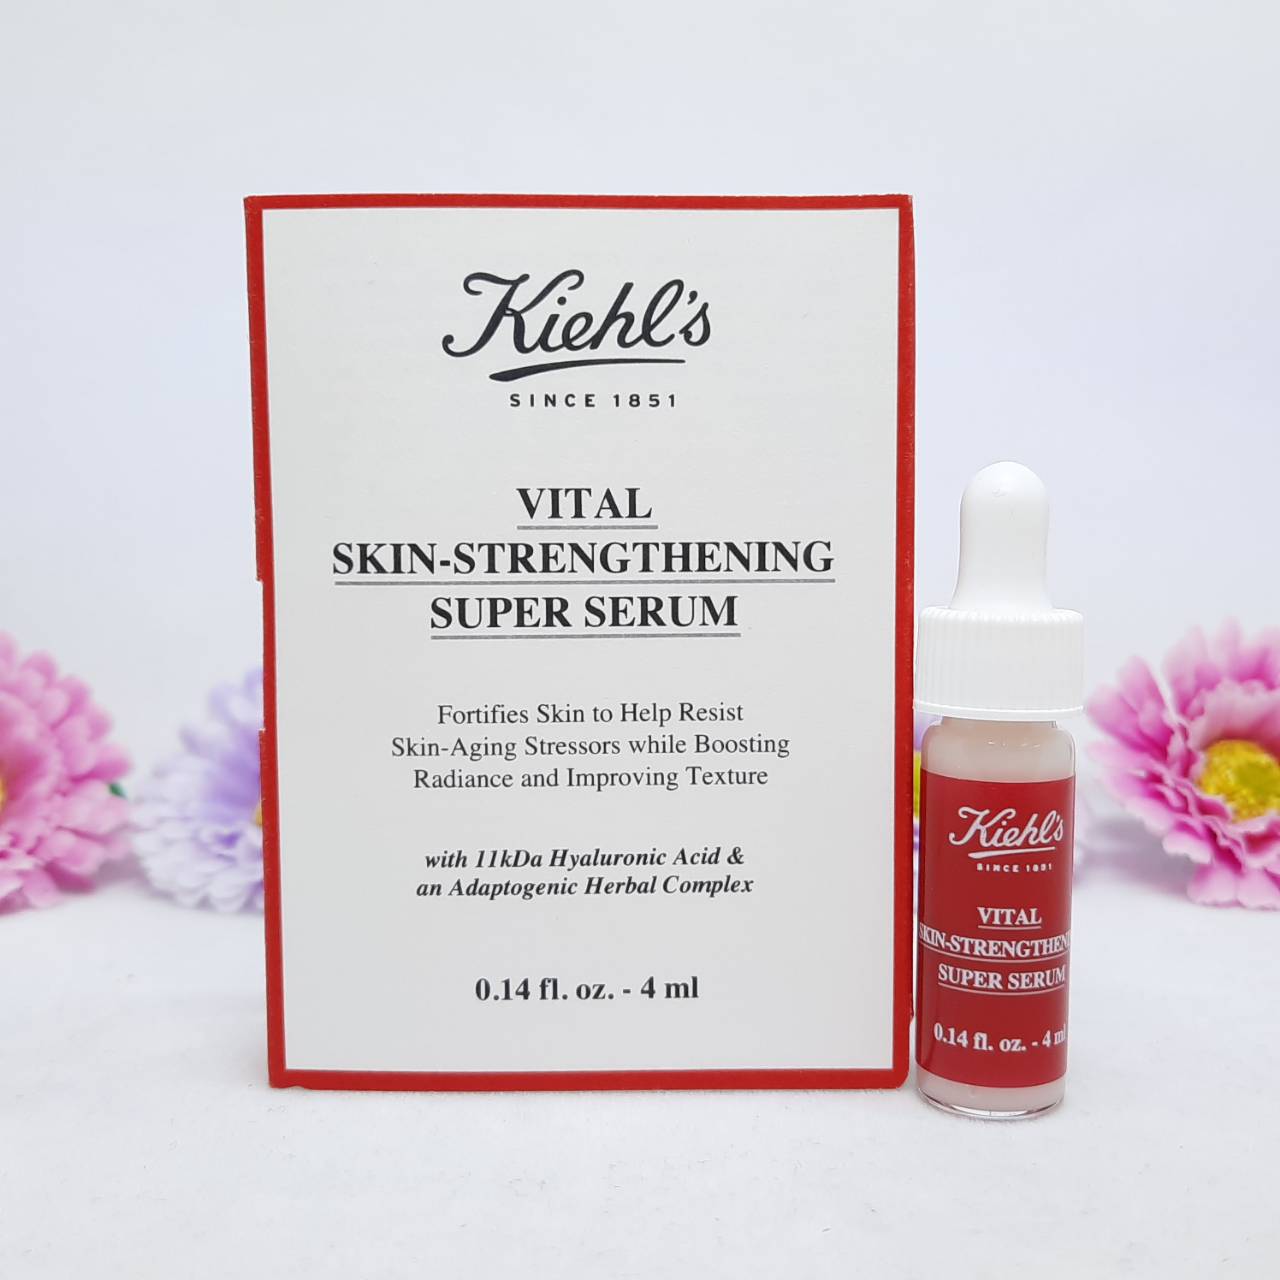 Kiehl's Vital Skin-Strengthening Hyaluronic Acid Super Serum 4 ml ...